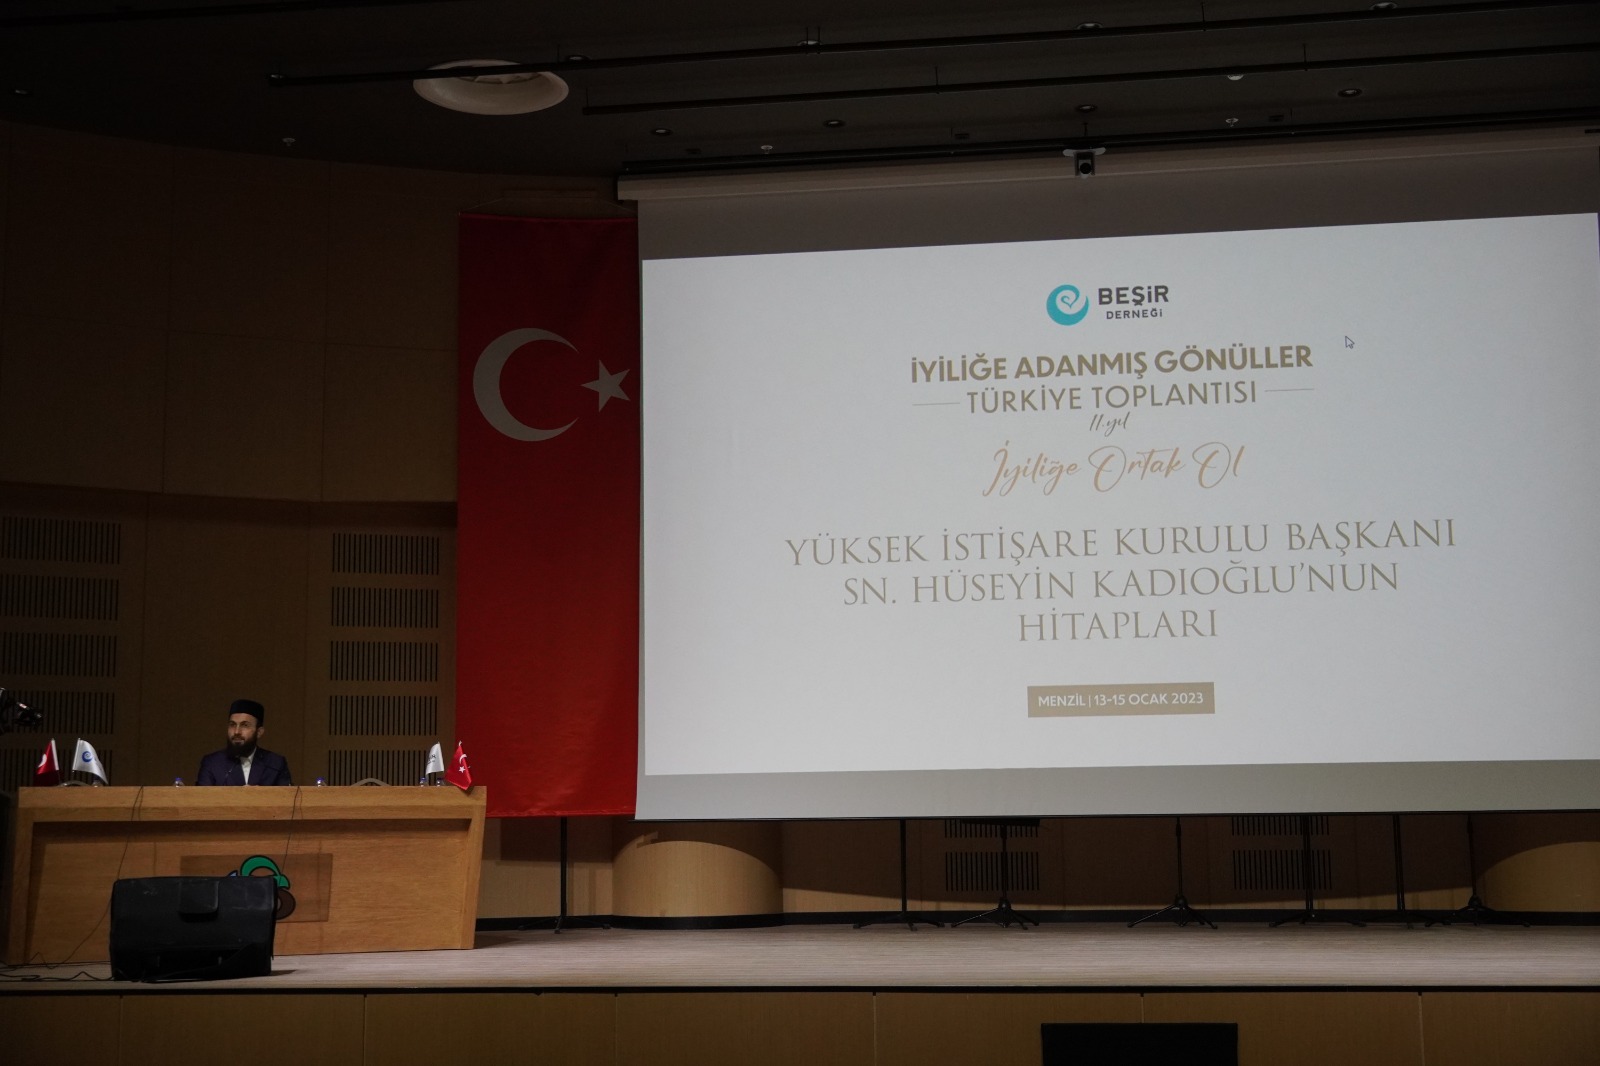 İyiliğe Adanmış Gönüller Türkiye Toplantısı Gerçekleştirildi 